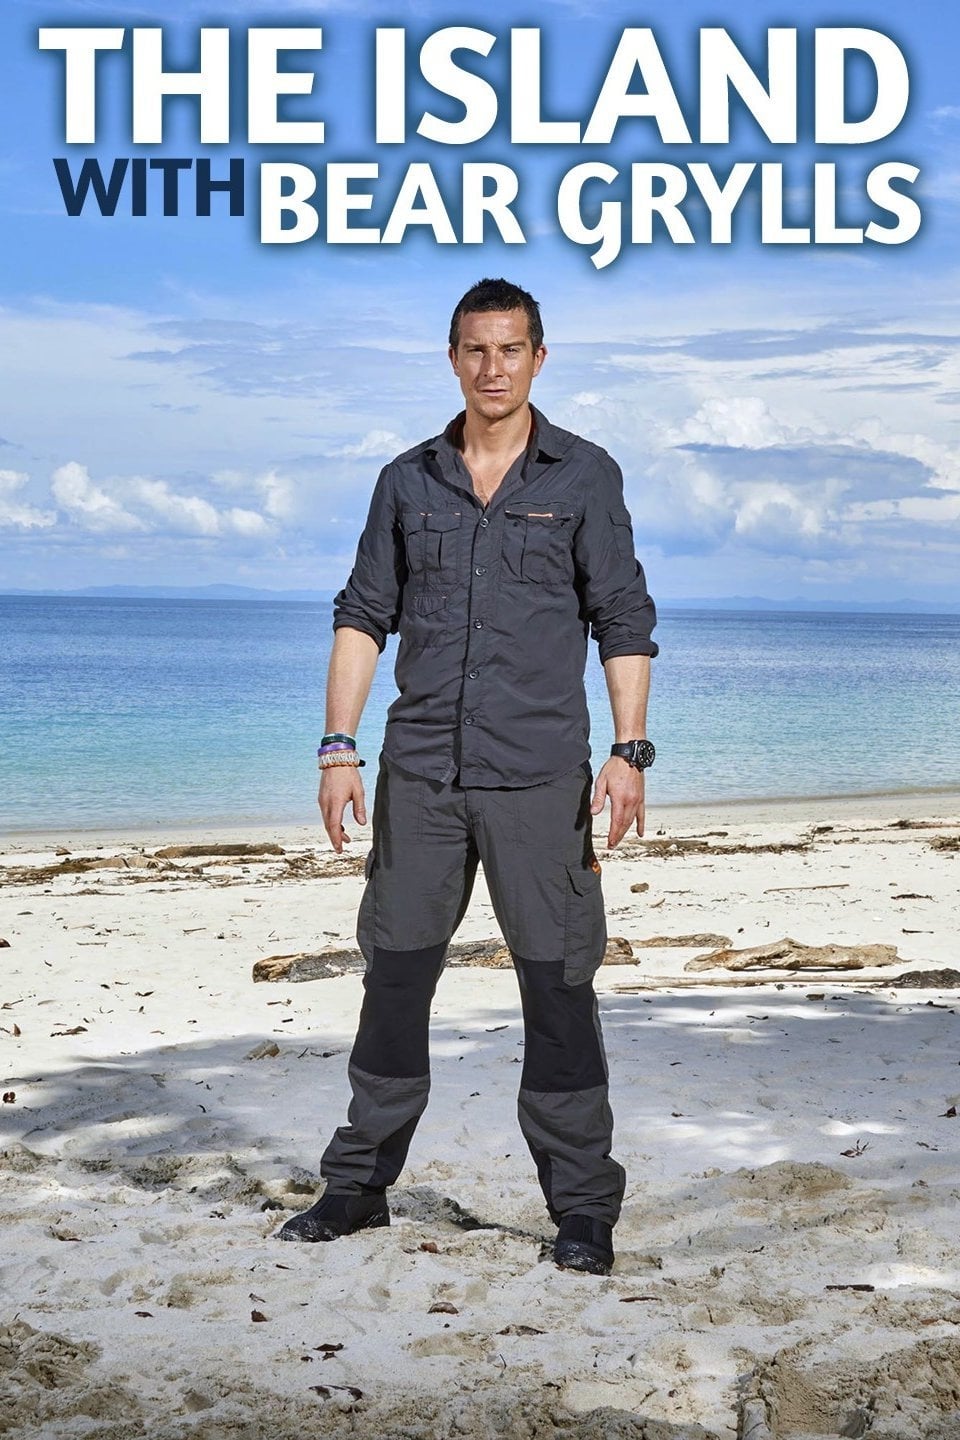 Plakát pro film “Na ostrově s Bearem Gryllsem”